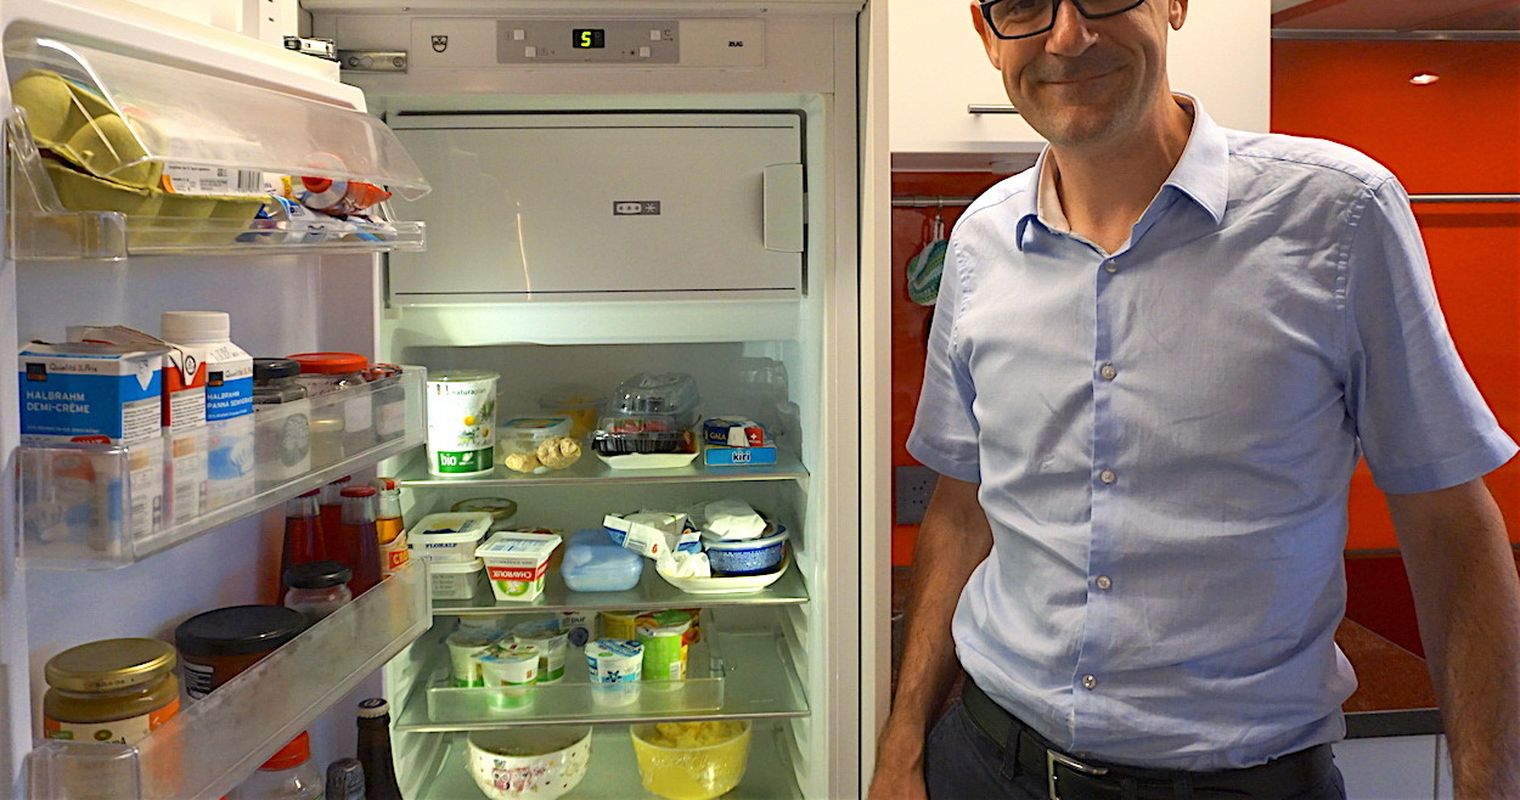 Mein Kühlschrank: Cremen, Wein und verschimmelte Experimente